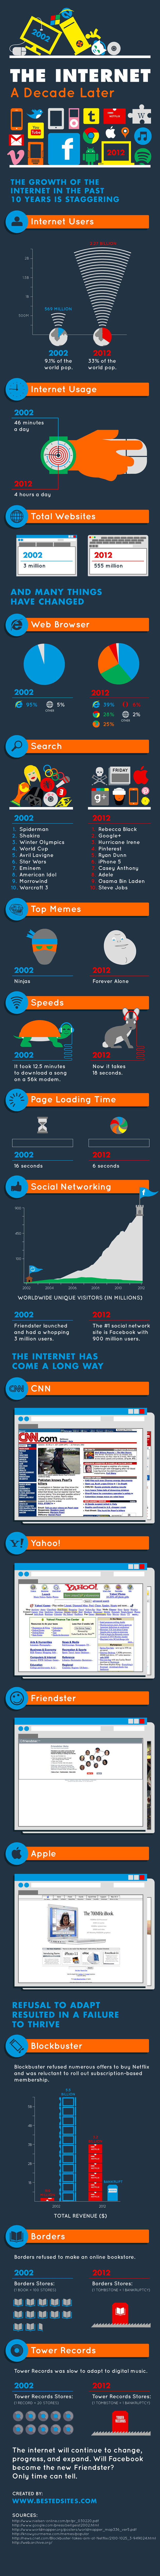 Internet 10 años despues infografia